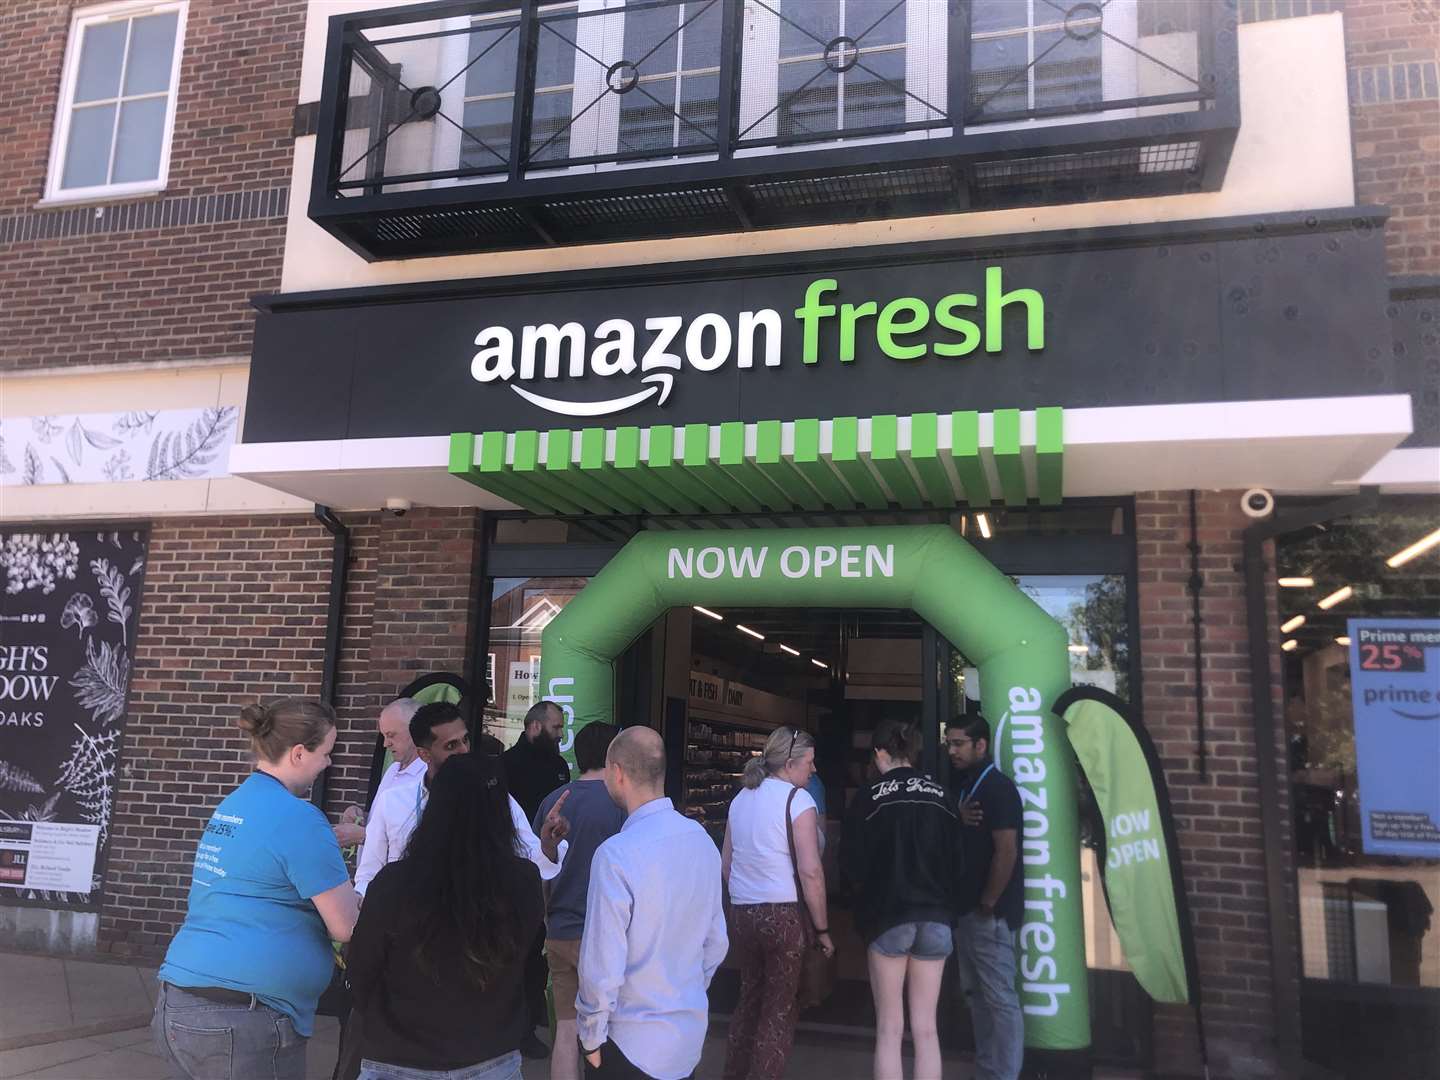 Shoppers queue at Amazon Fresh at Bligh Meadow Shopping Centre in Sevenoaks